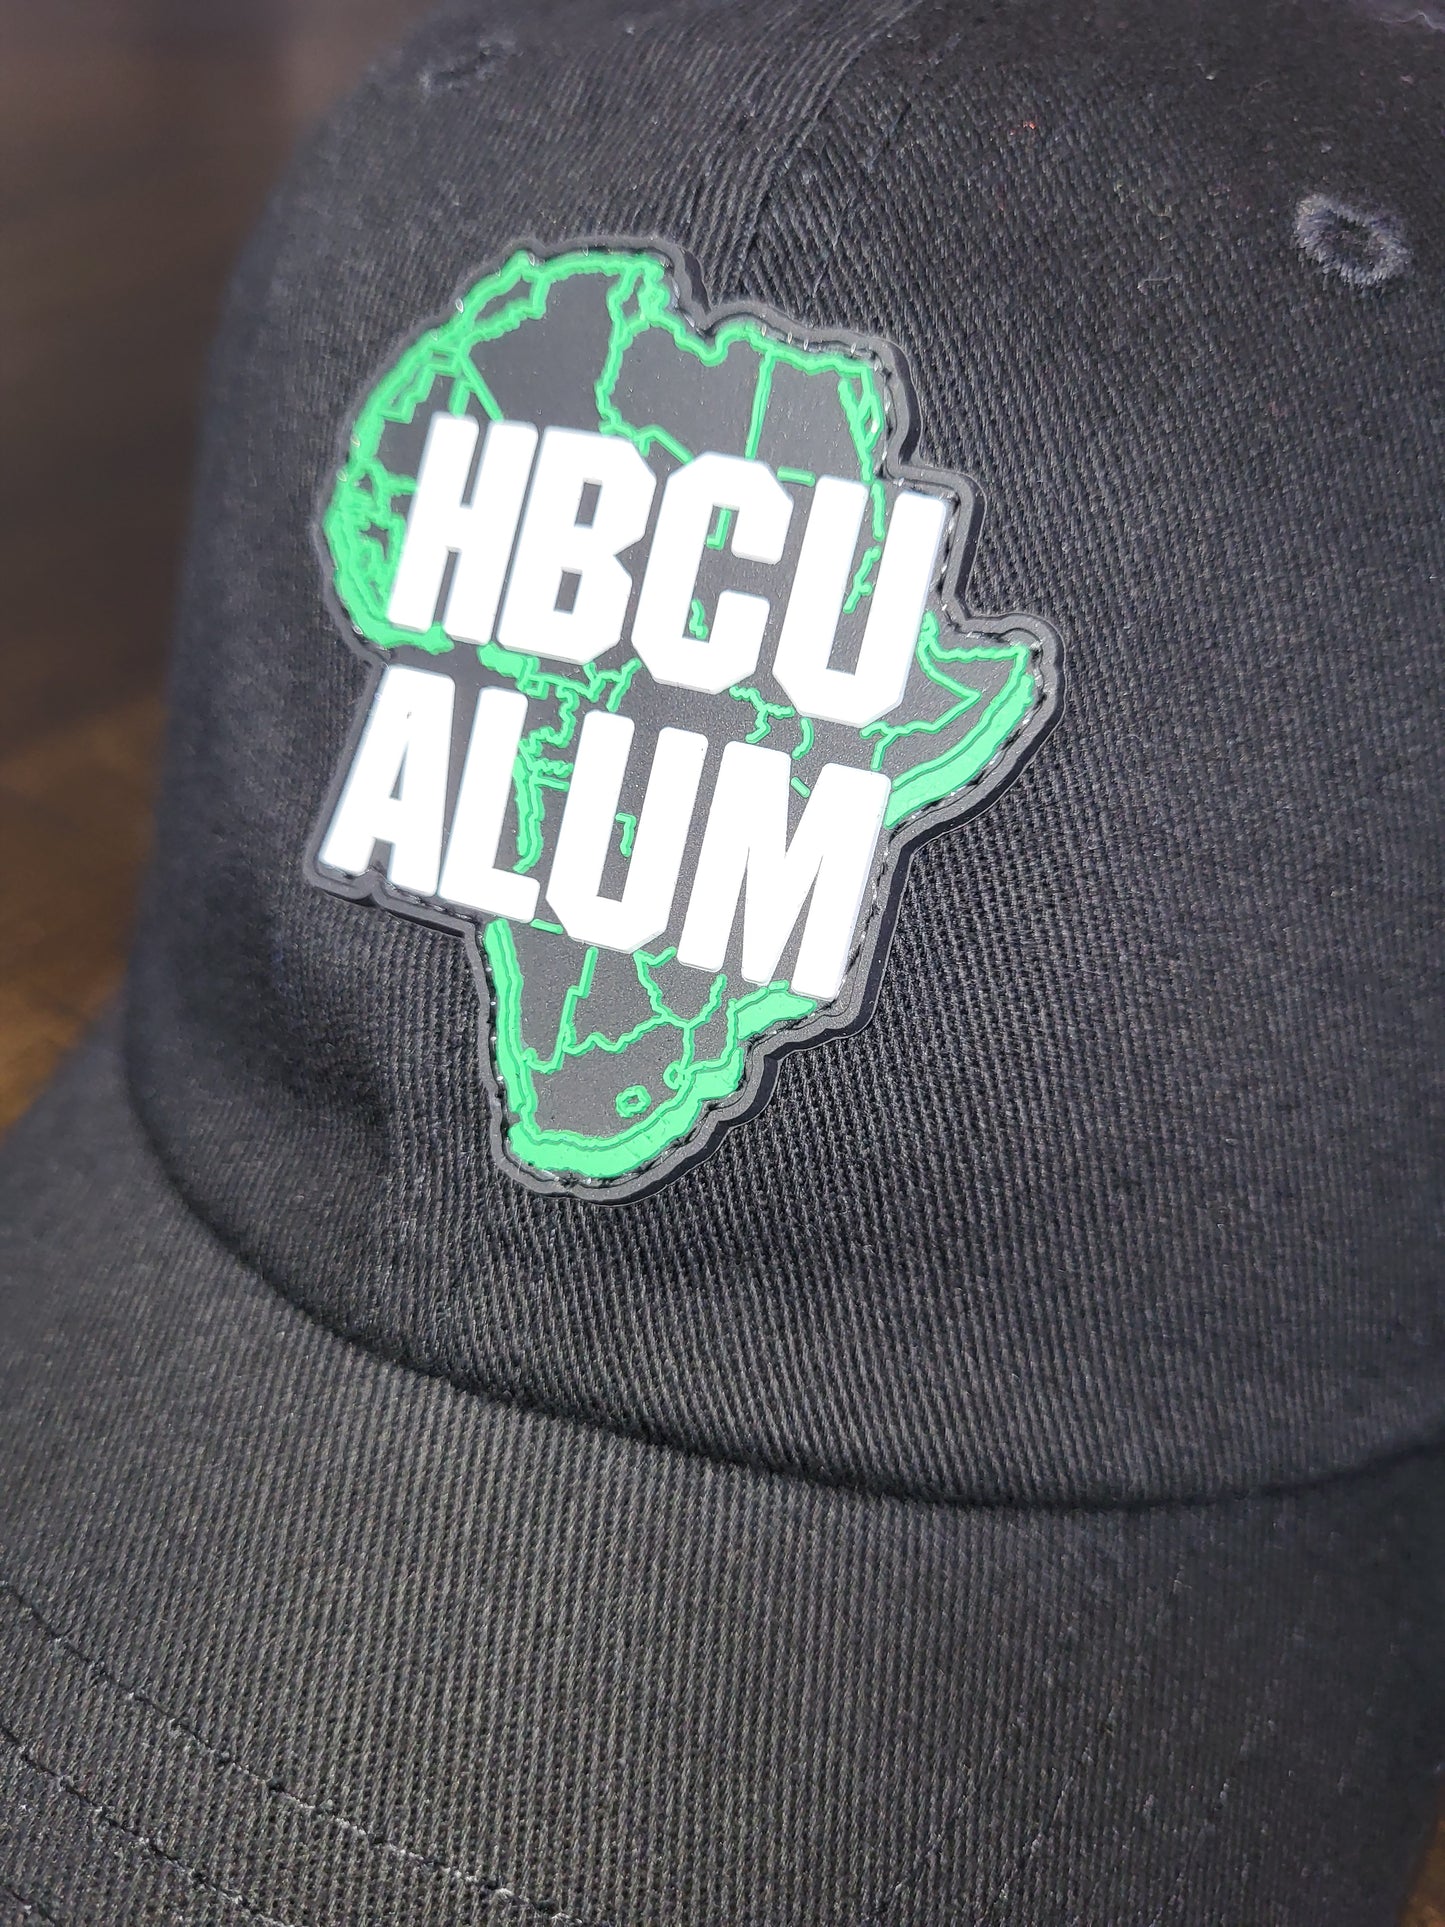 HBCU Alum Hat - HBCU Shirts, HBCU Apparel, Black Colleges, HBCU Alumni